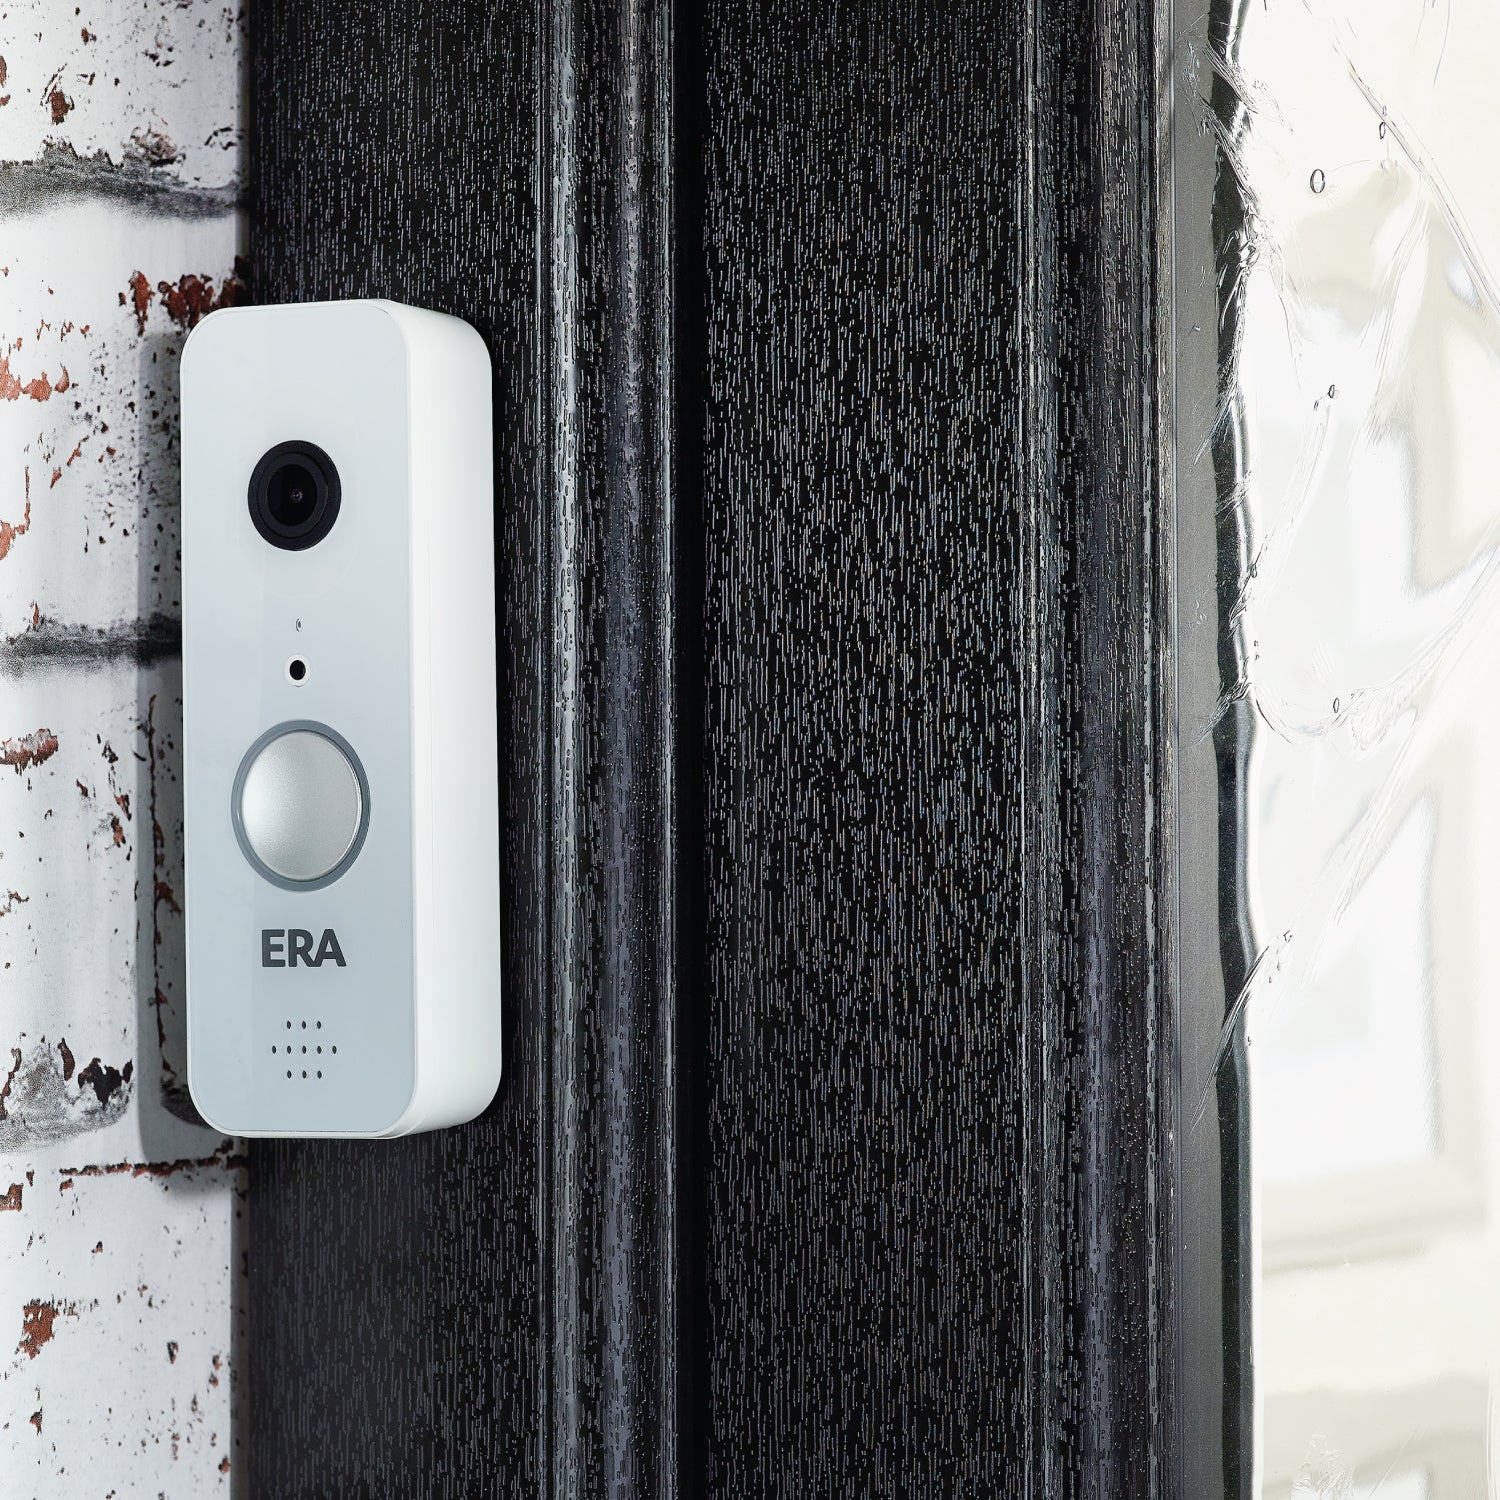 ERA Protect Smart Home Video Doorbell